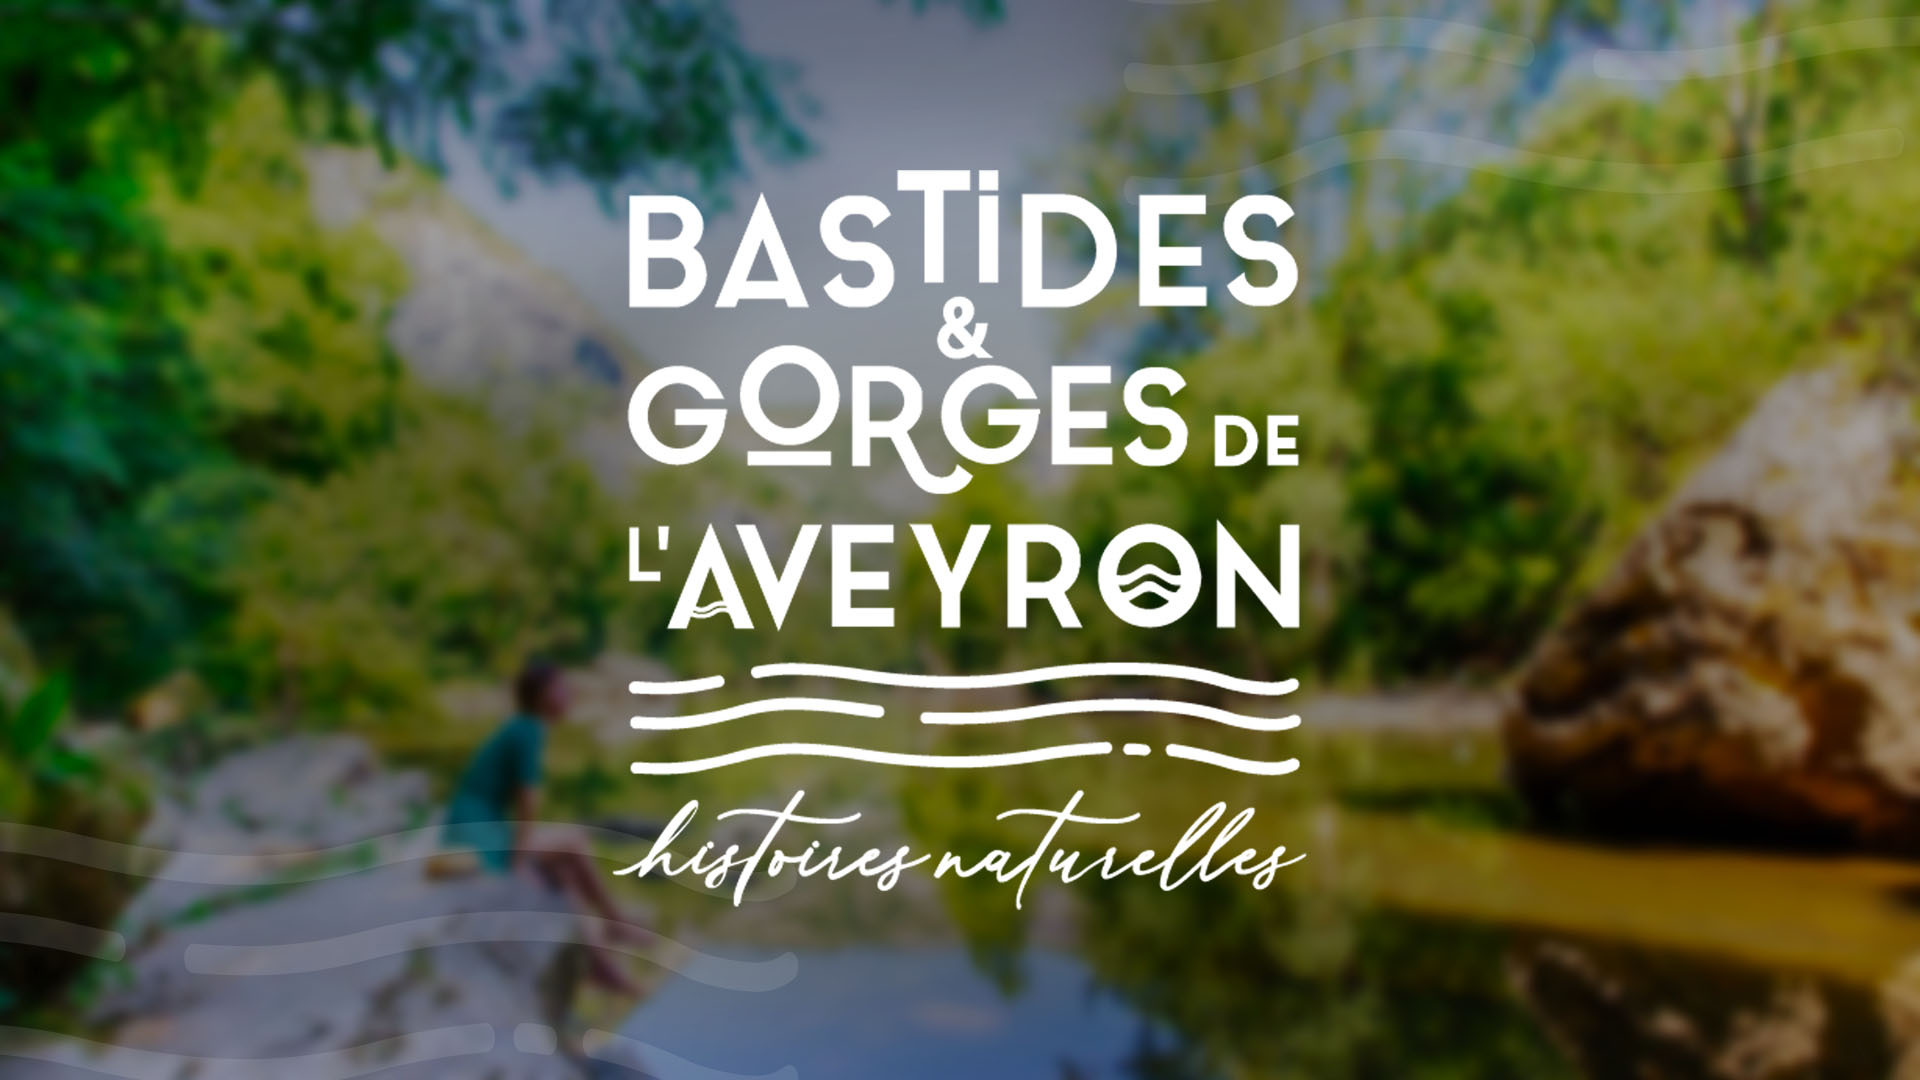 Bastides & Gorges of Aveyron